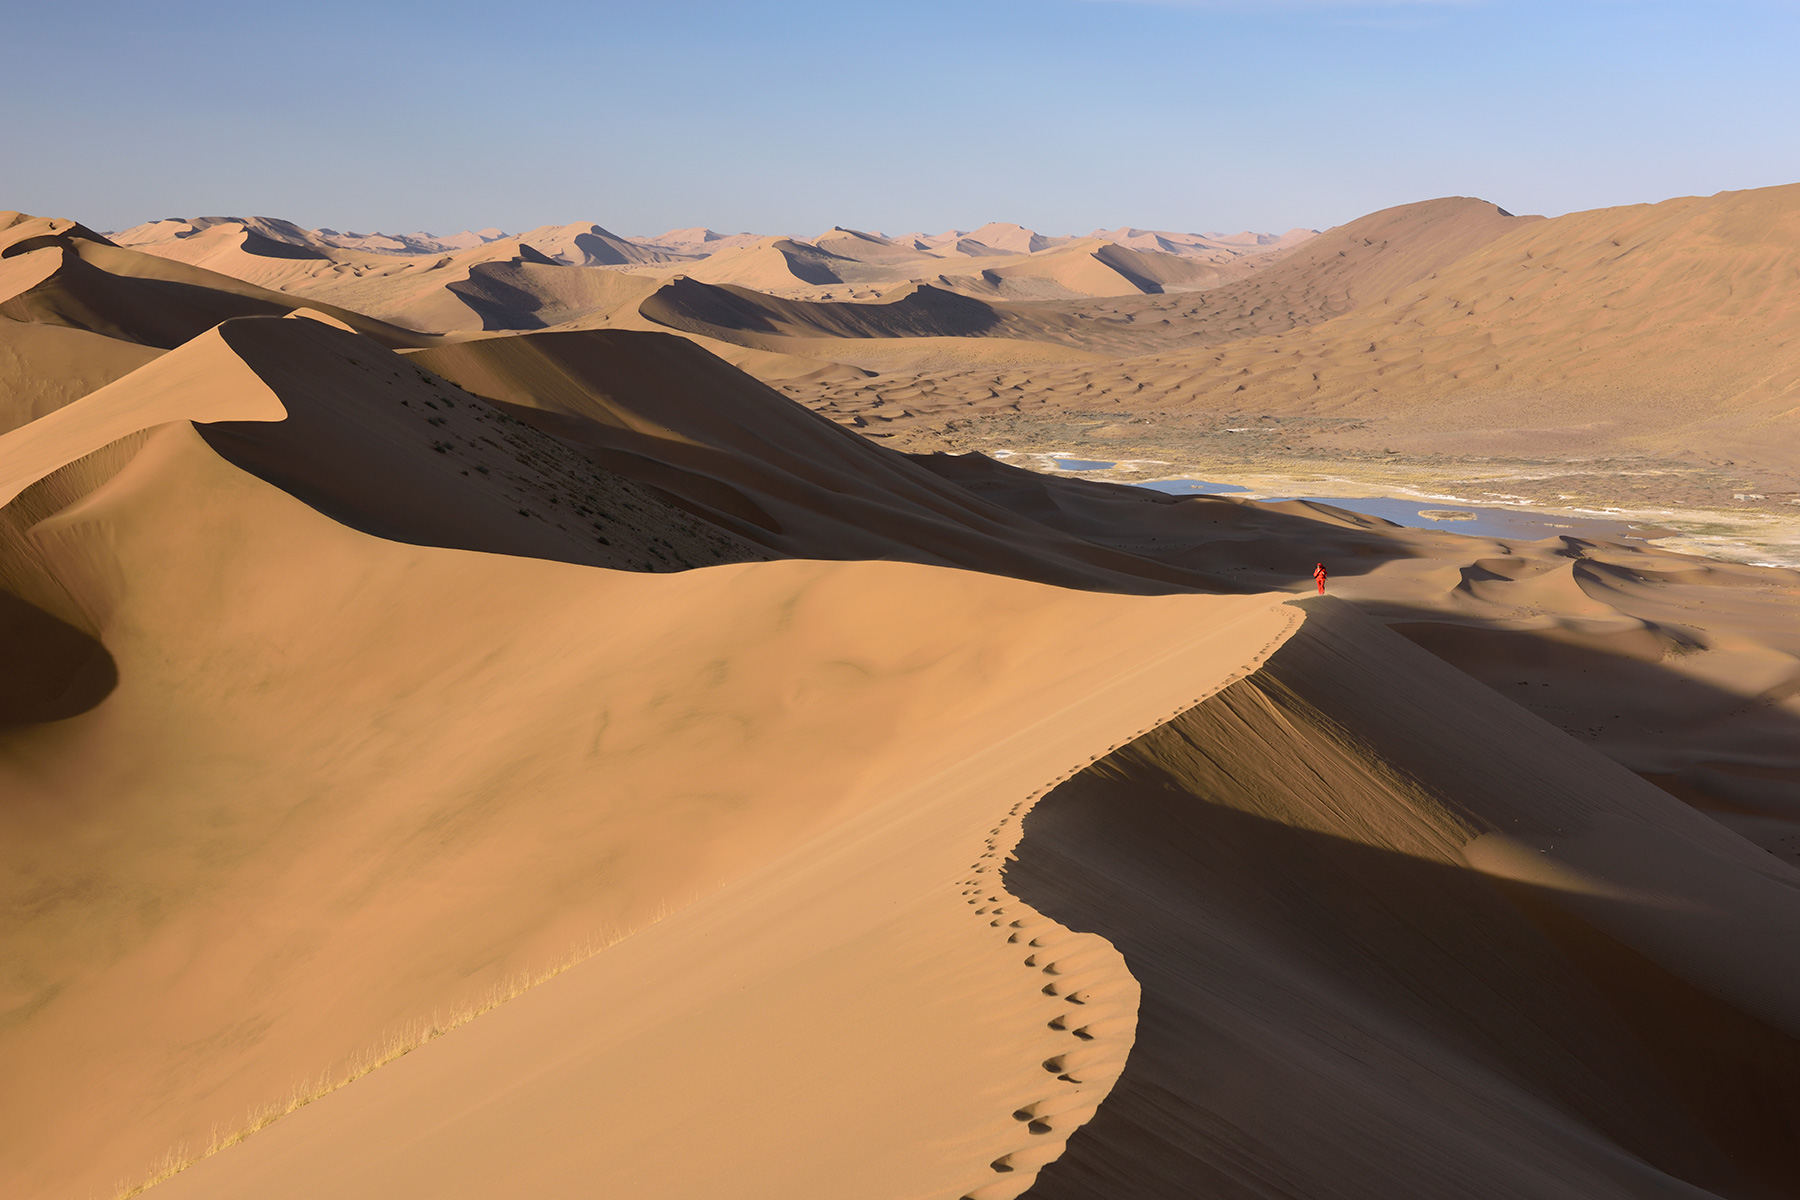 Désert du Badain Jaran (Chine, Mongolie Intérieure) - Vue générale d'un enchaînement de dunes avec randonneuse au loin sur la crête. Vallée avec lac salé à droite.